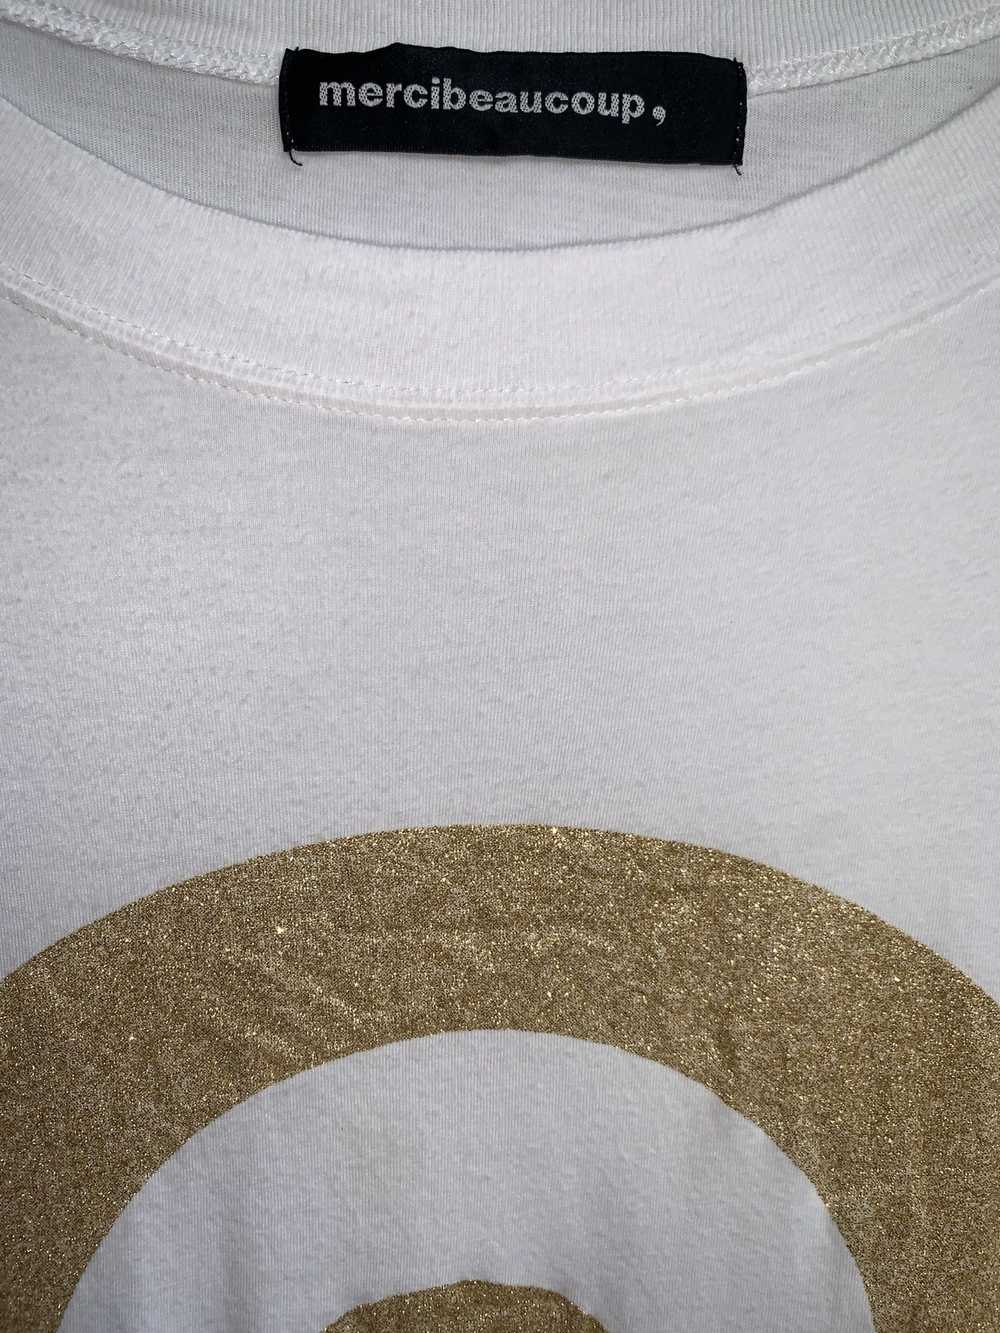 Issey Miyake × Mercibeaucoup Mercibeaucoup Shirt - image 2